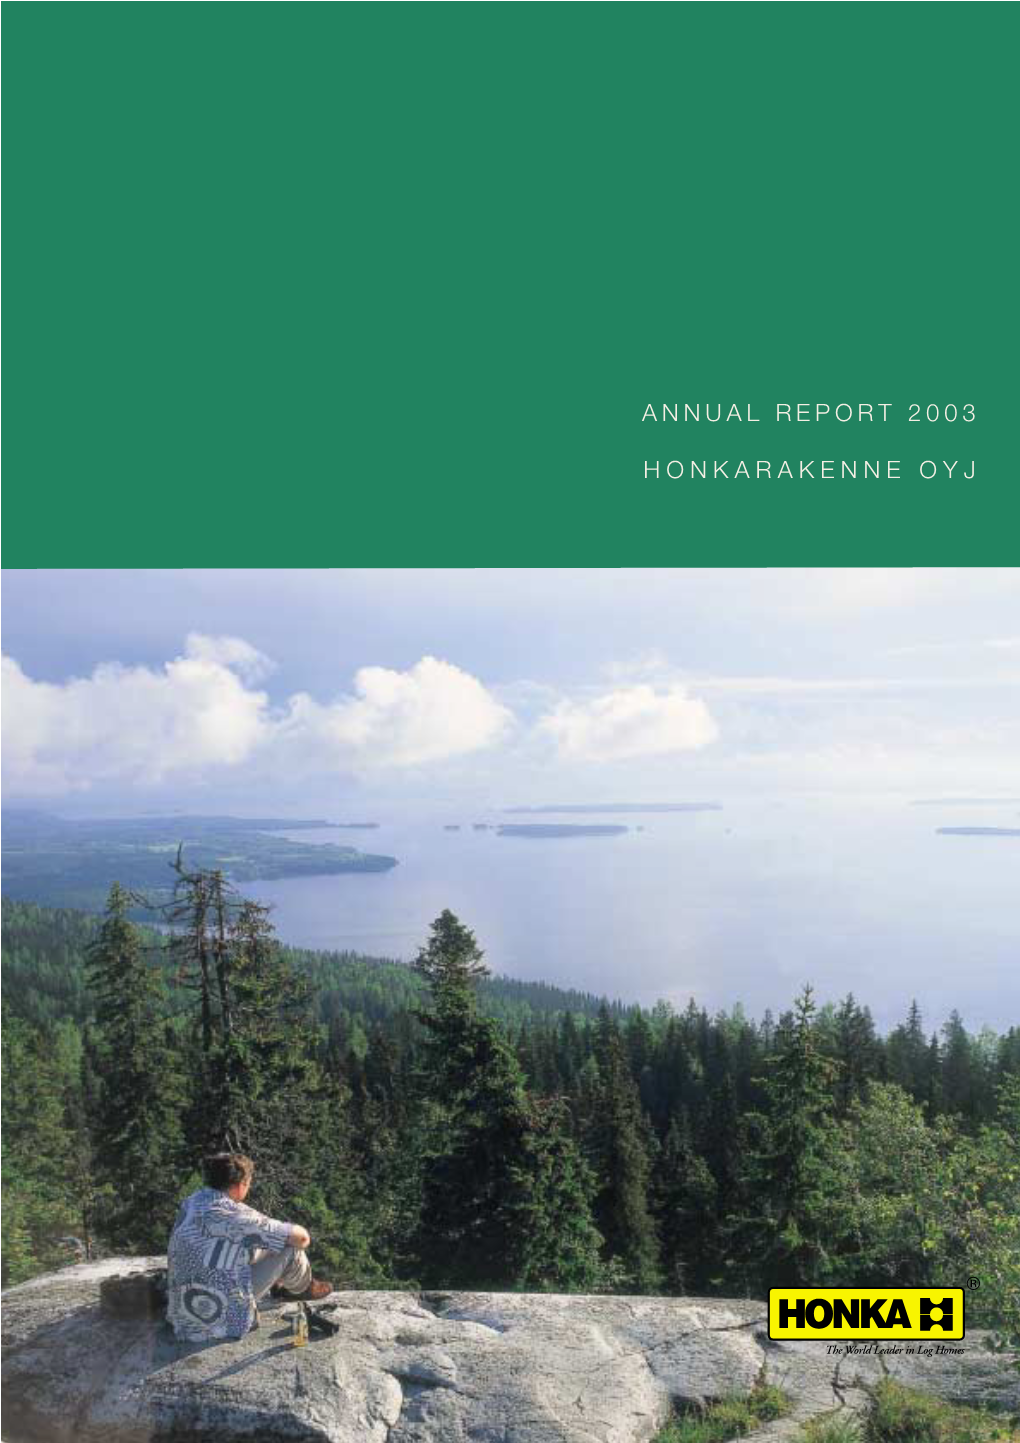 Annual Report 2003 Honkarakenne